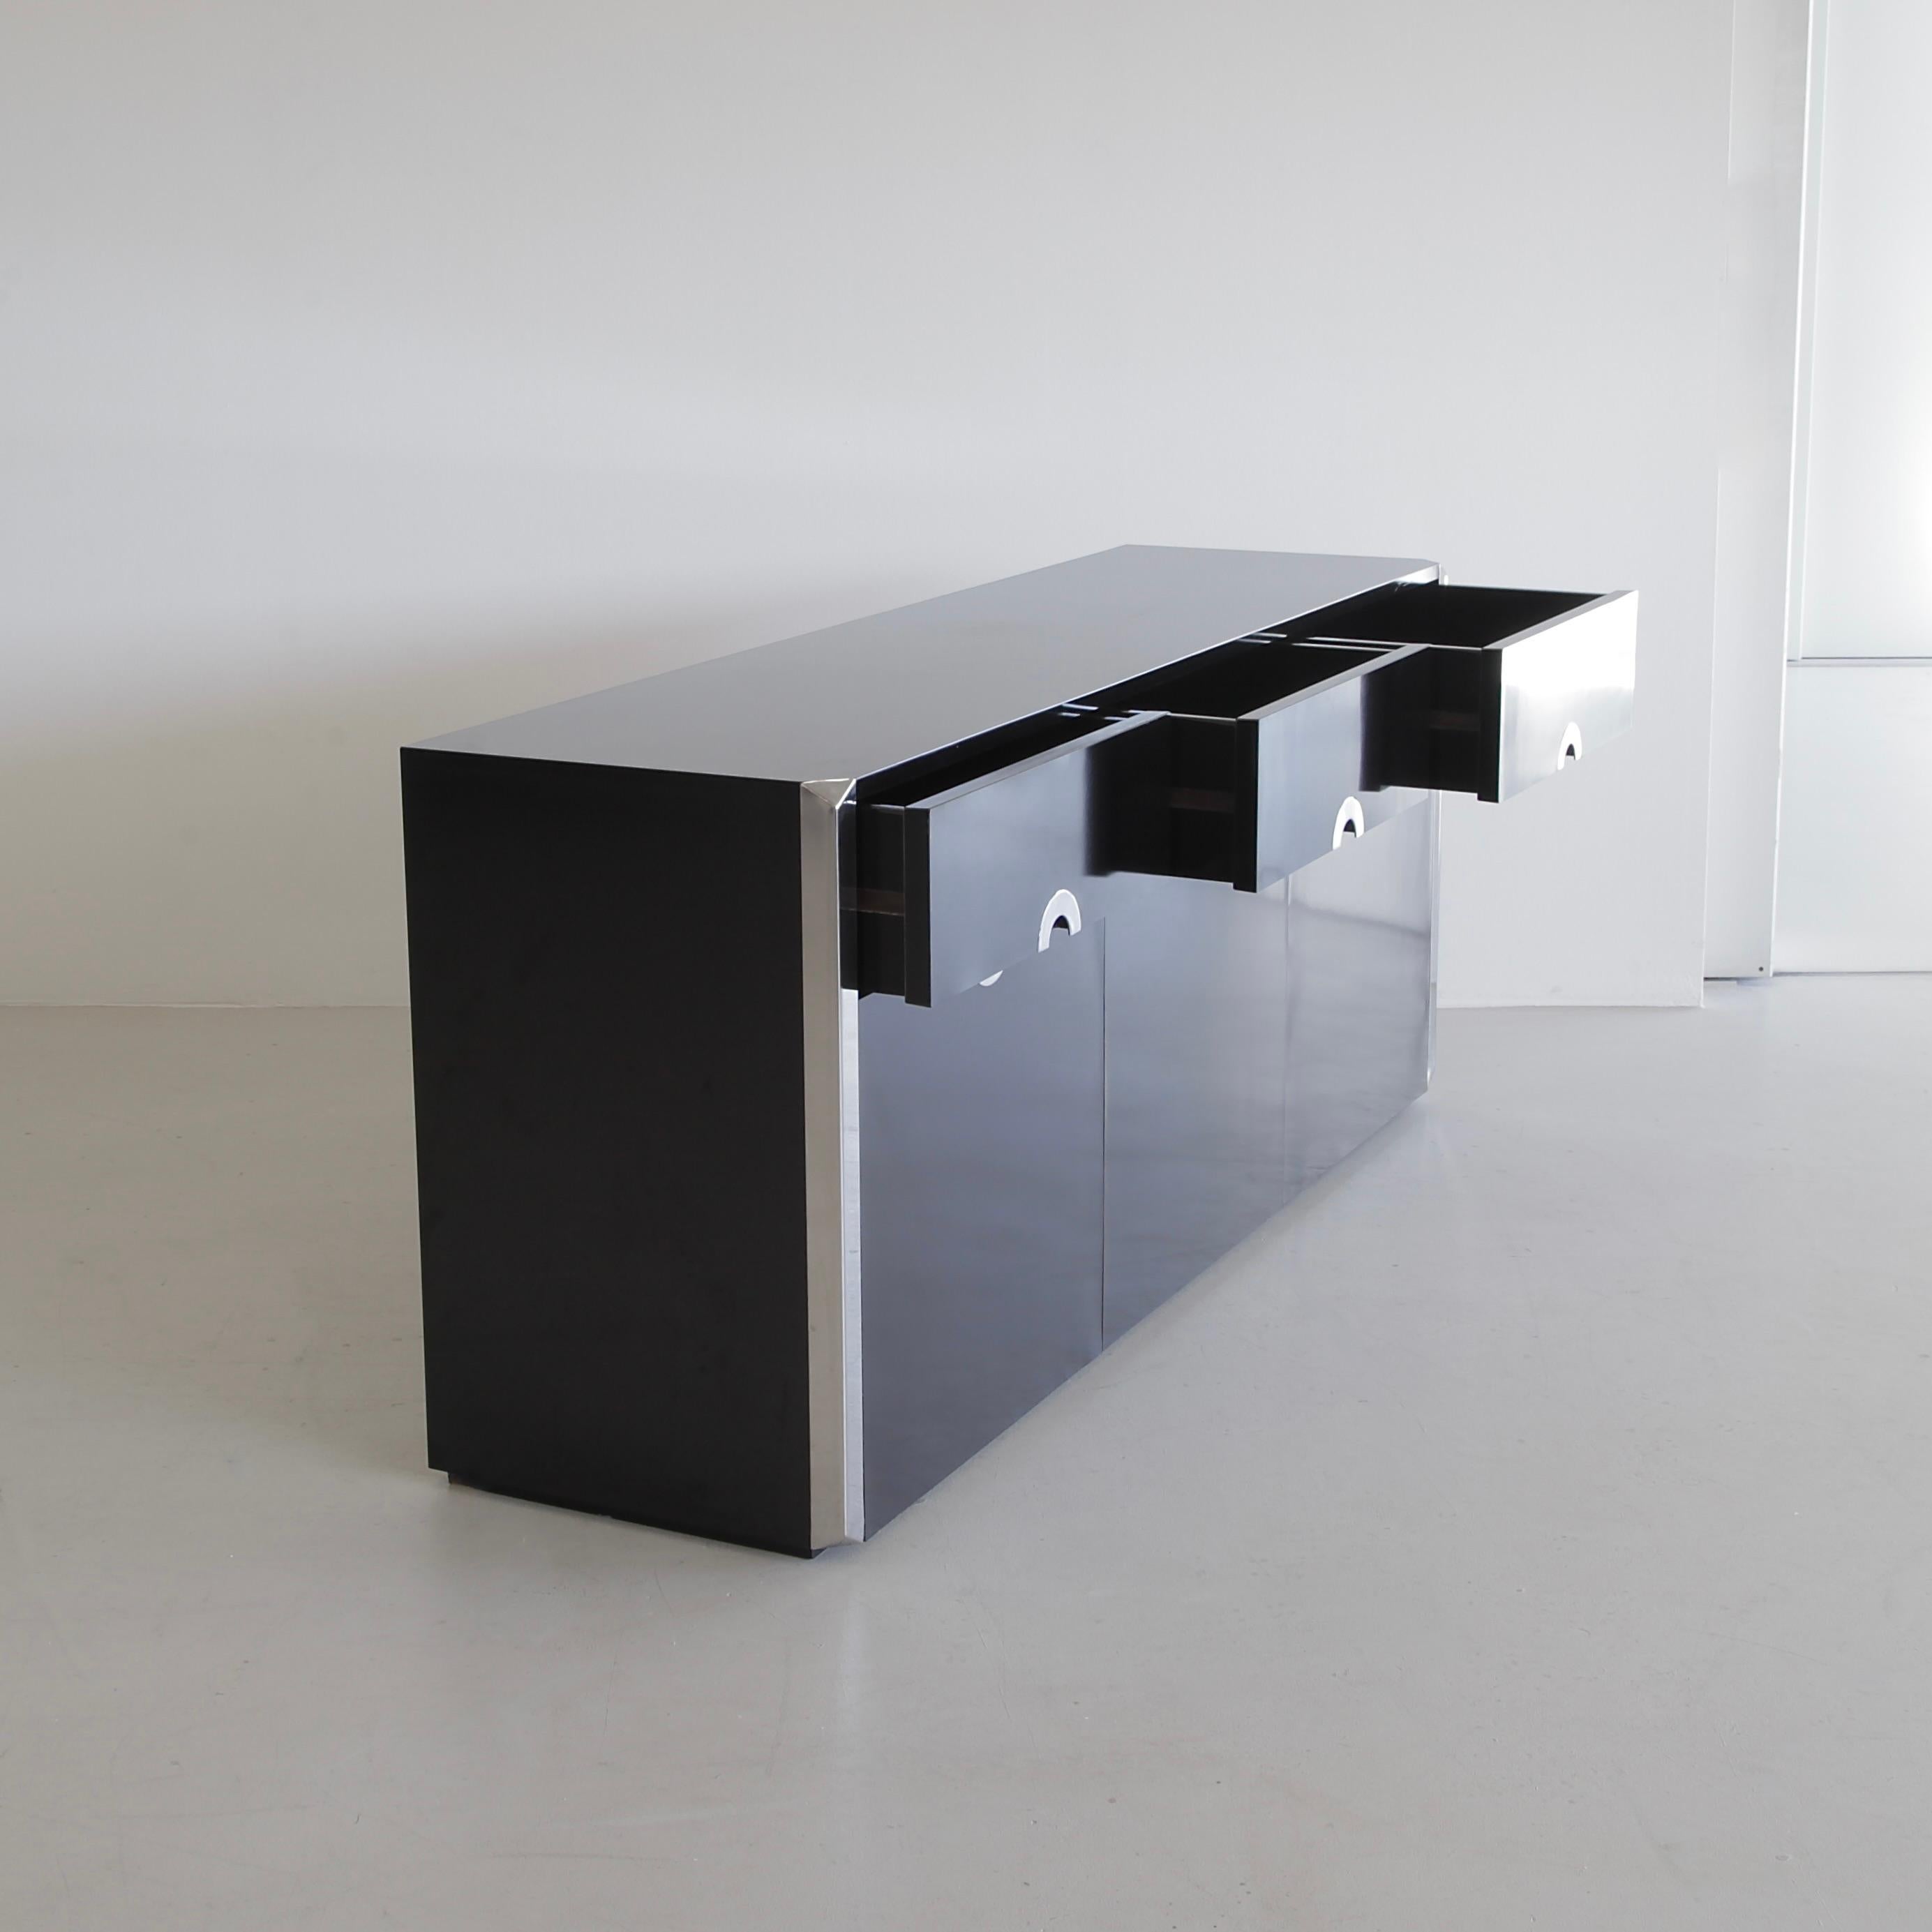 Schwarzes dreitüriges Sideboard, entworfen von Willy Rizzo. Italien, Mario Sabot, 1972. Anrichte mit schwarzem Laminat und Chromdetails, entworfen von Willy Rizzo und hergestellt von Mario Sabot.

Zwei Türen, eine mittlere Klapptür und drei